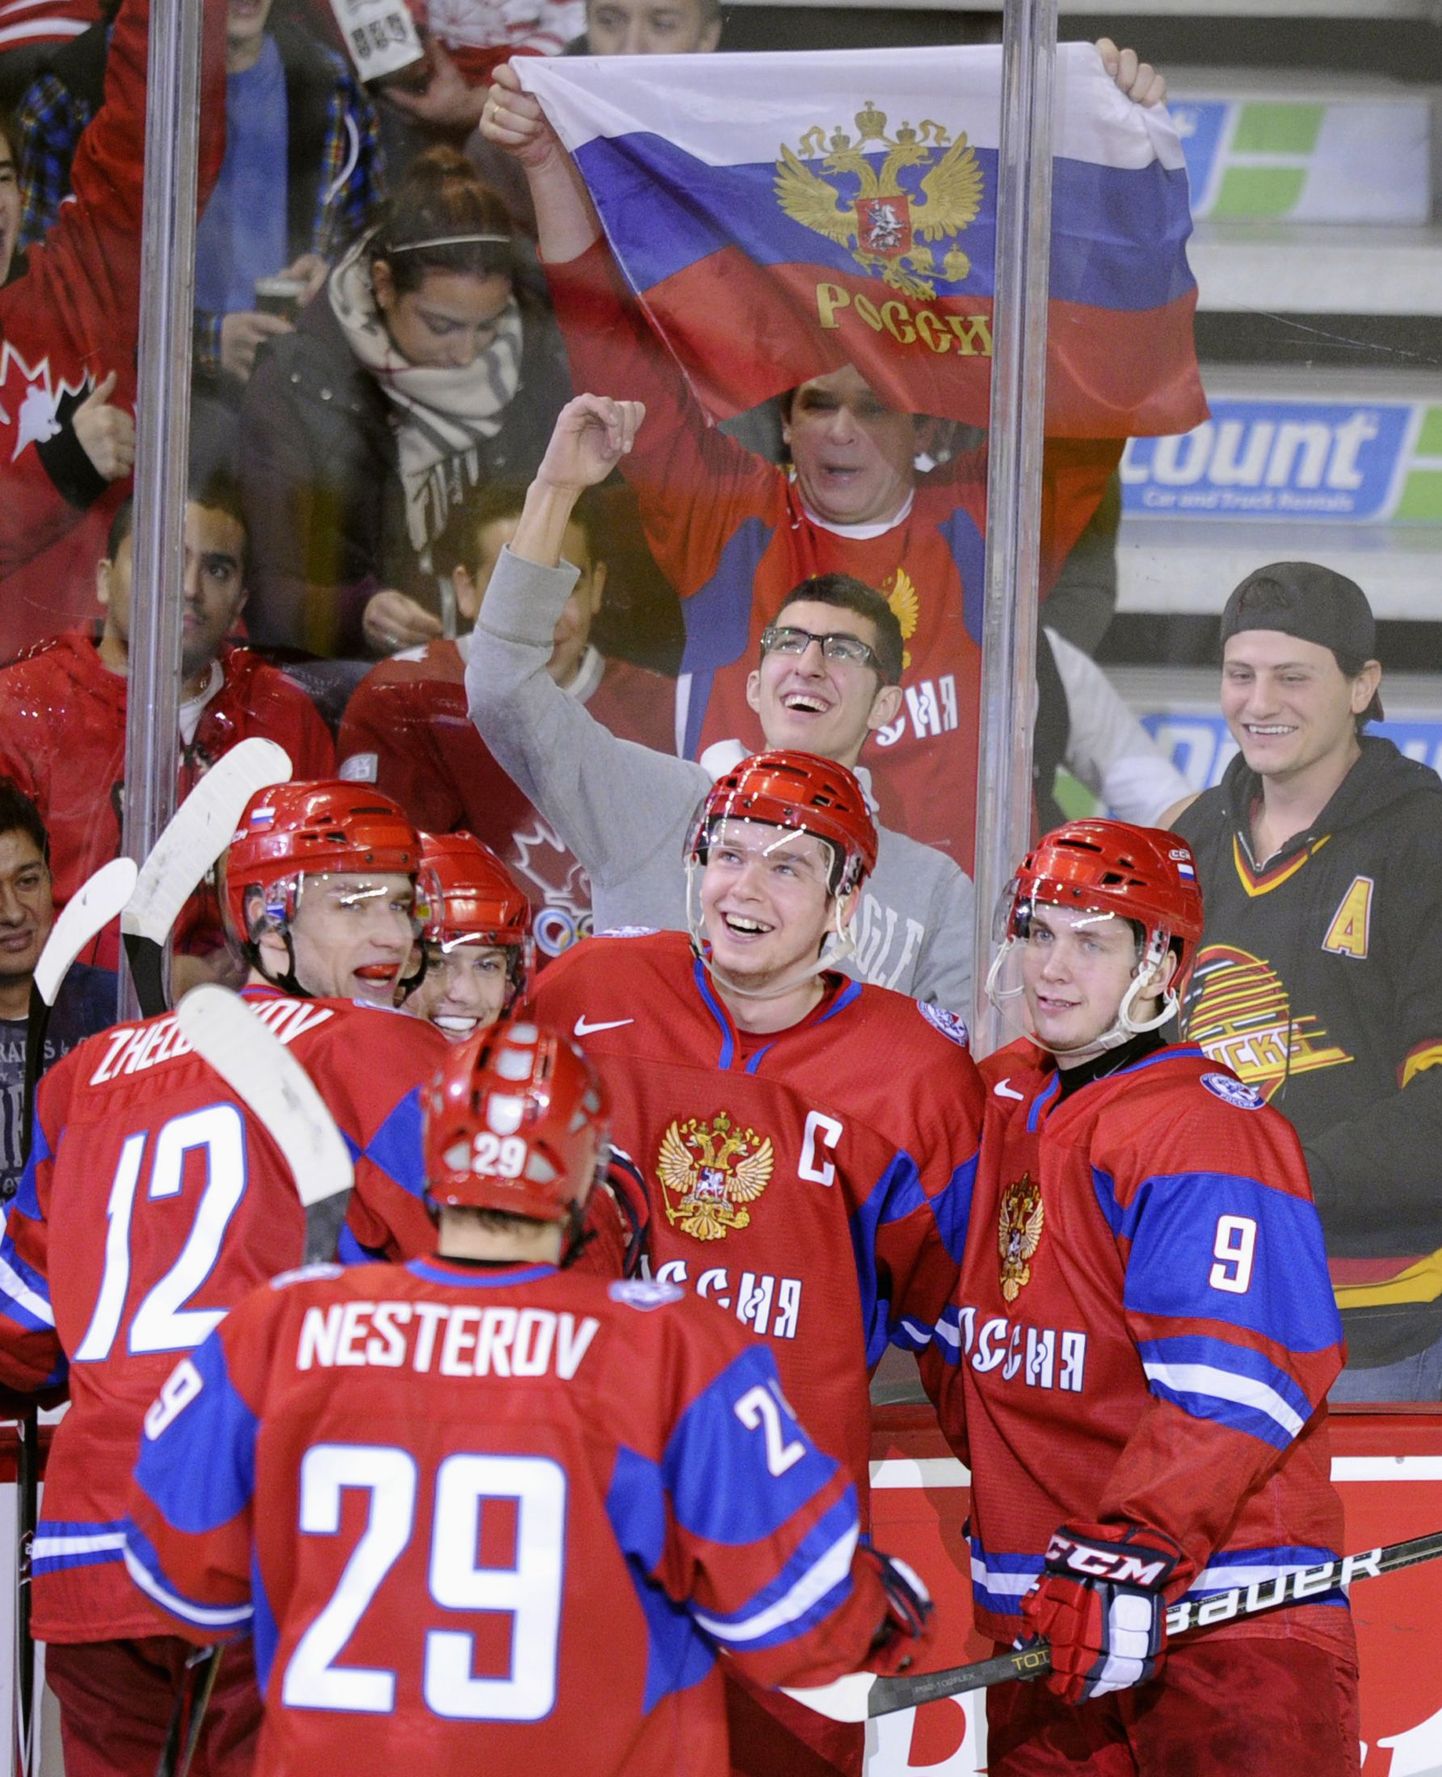 Venemaa U20 hokikoondis järjekordse värava üle rõõmustamas.